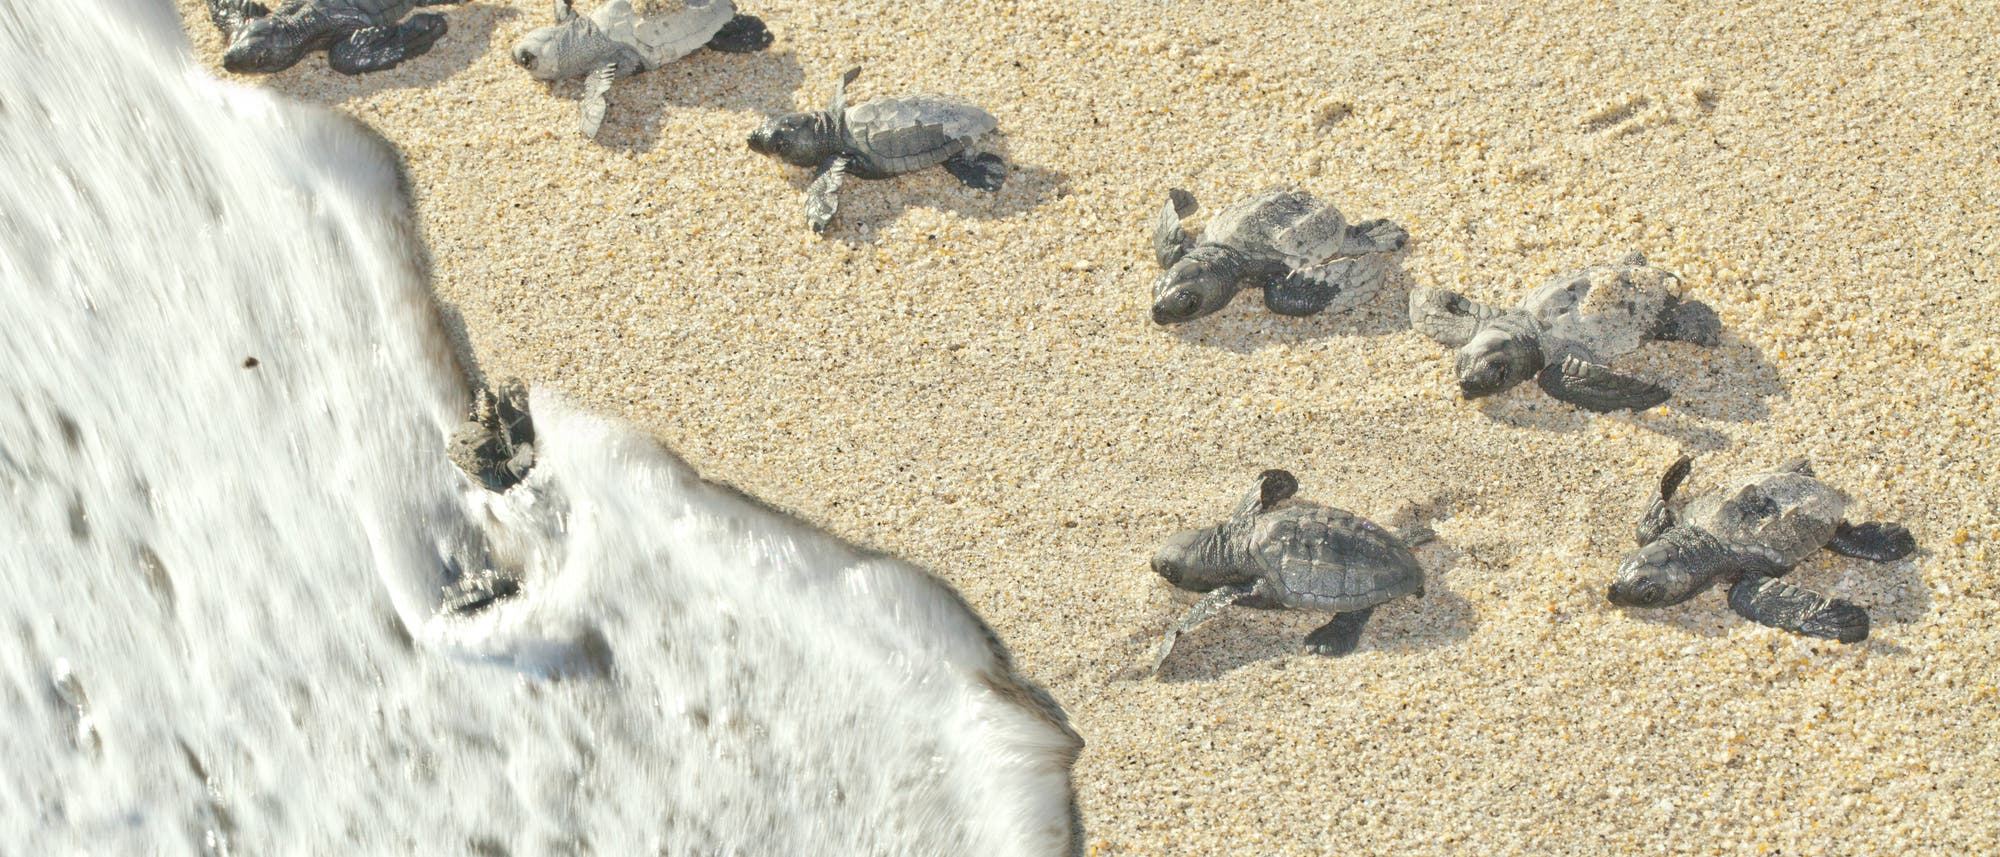 Oliv-Bastardschildkröten rennen ins rettende Meer 